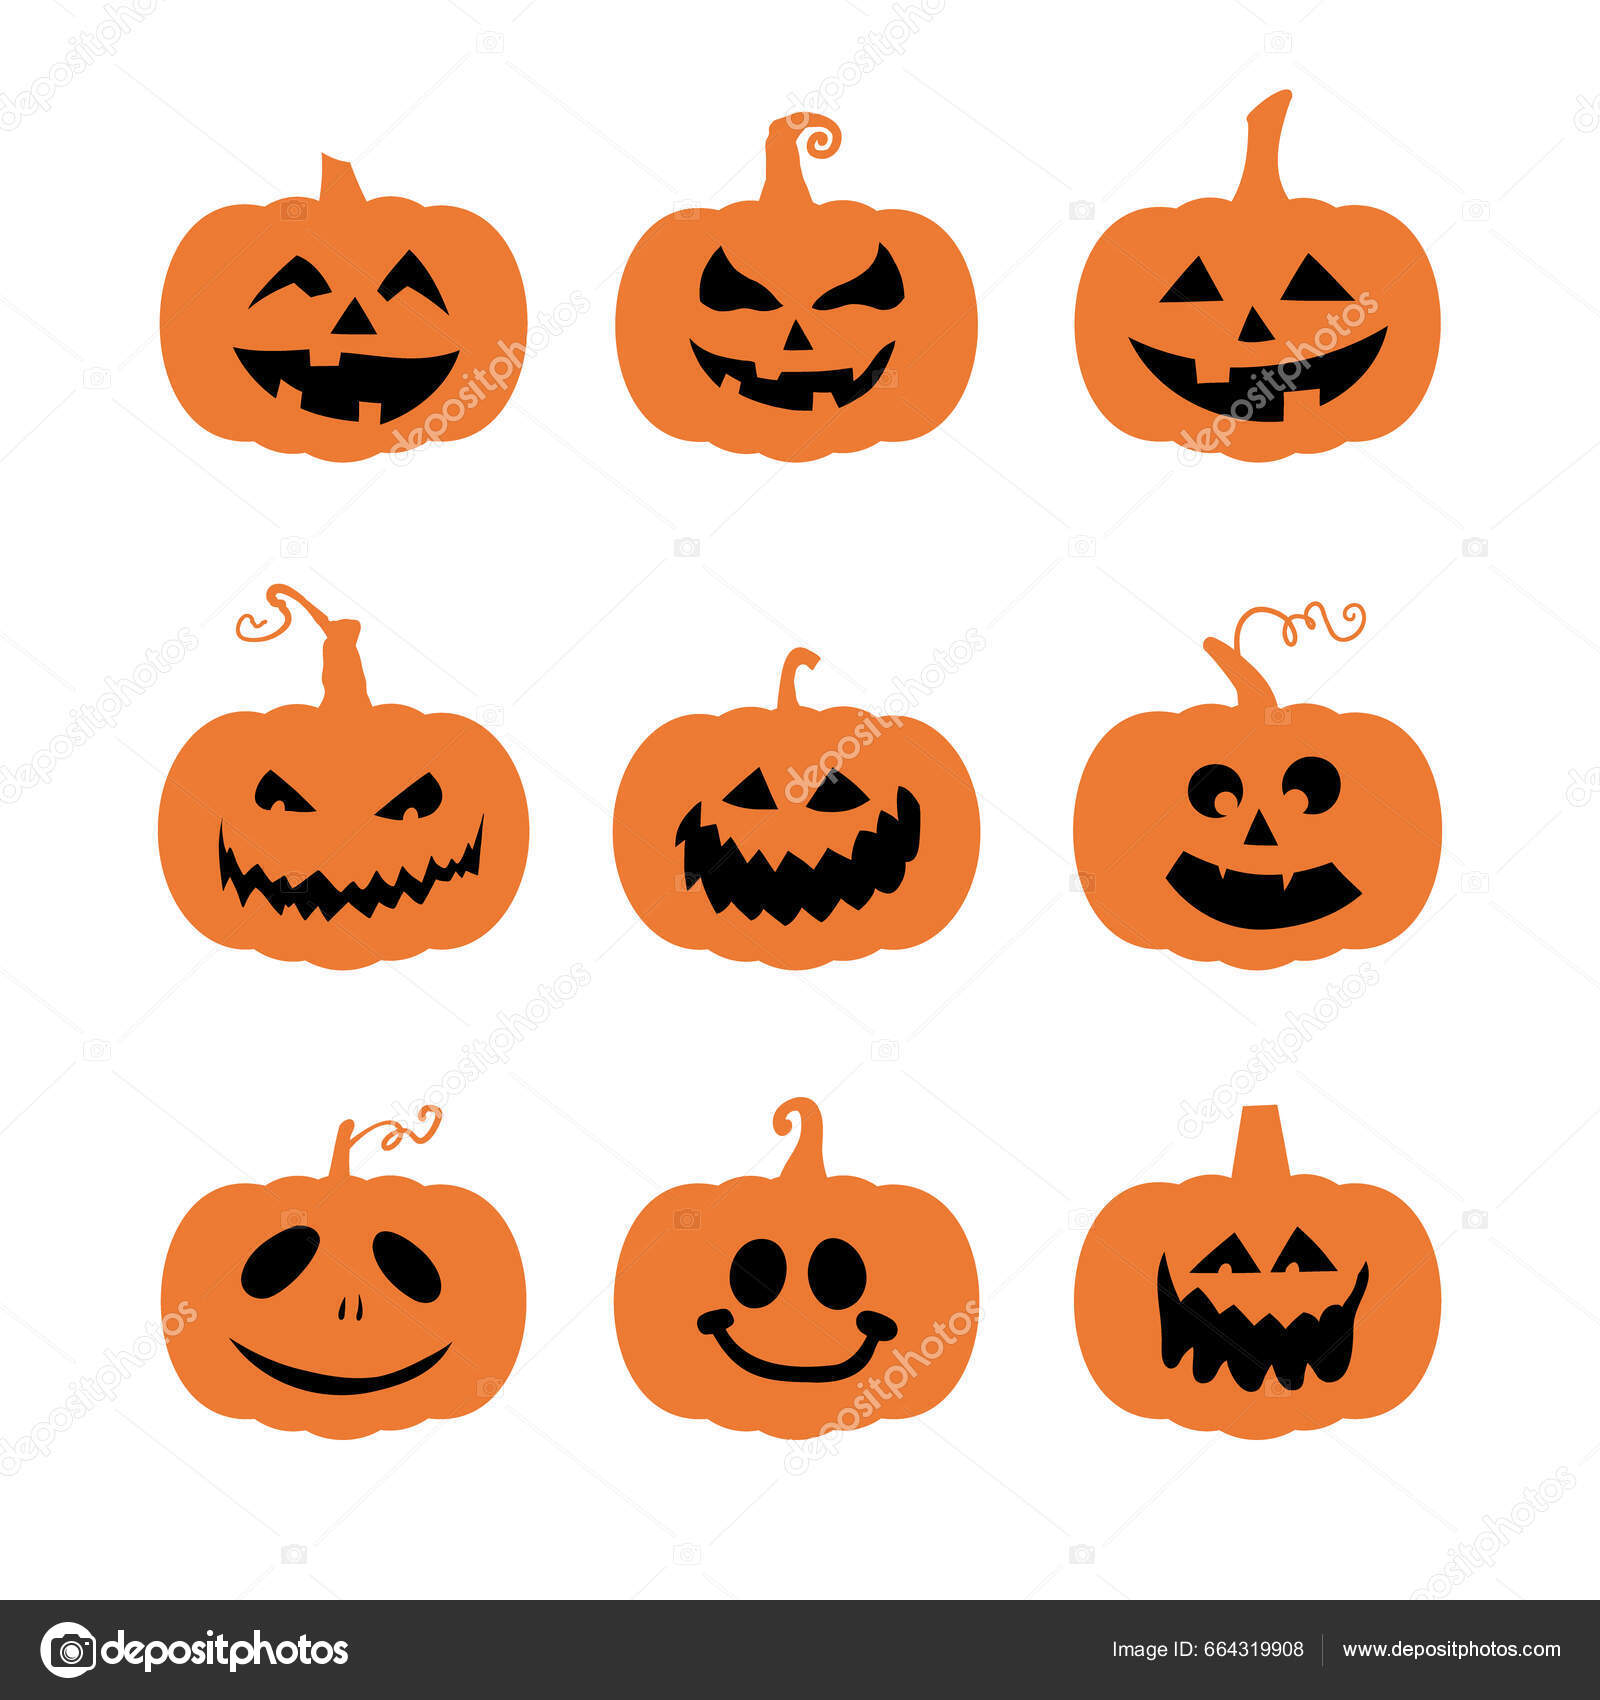 Ilustração de abóbora de halloween de cara assustadora